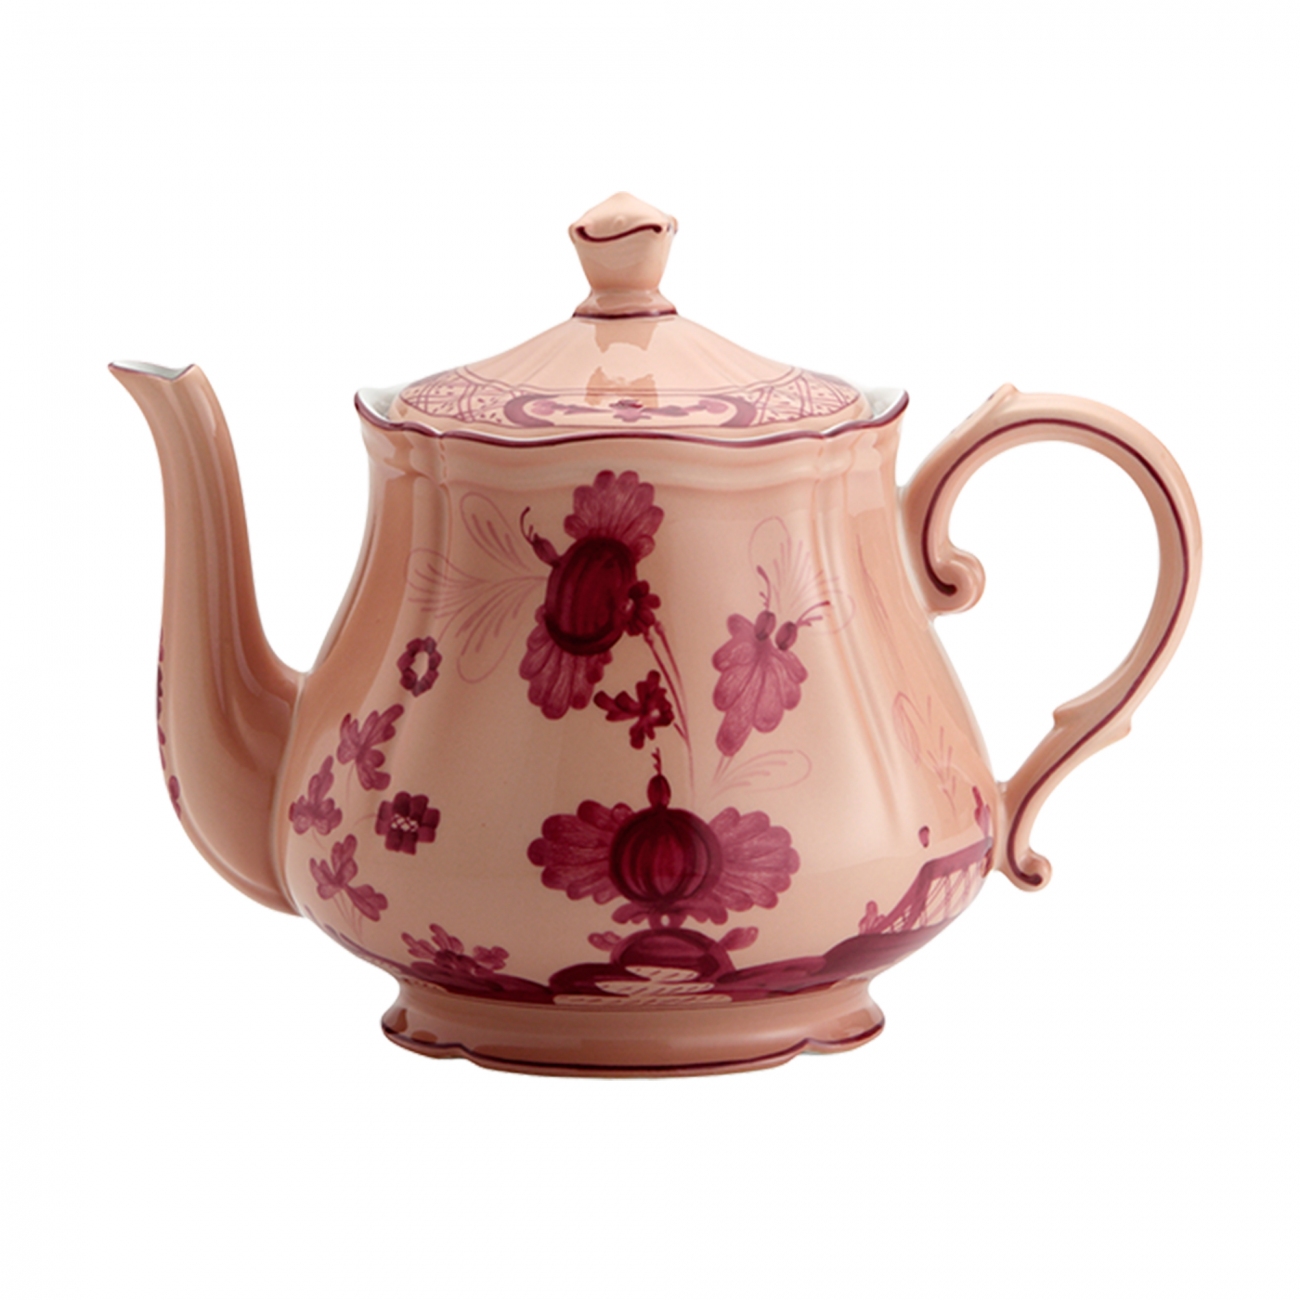 Ginori 1735 Oriente Italiano Teapot